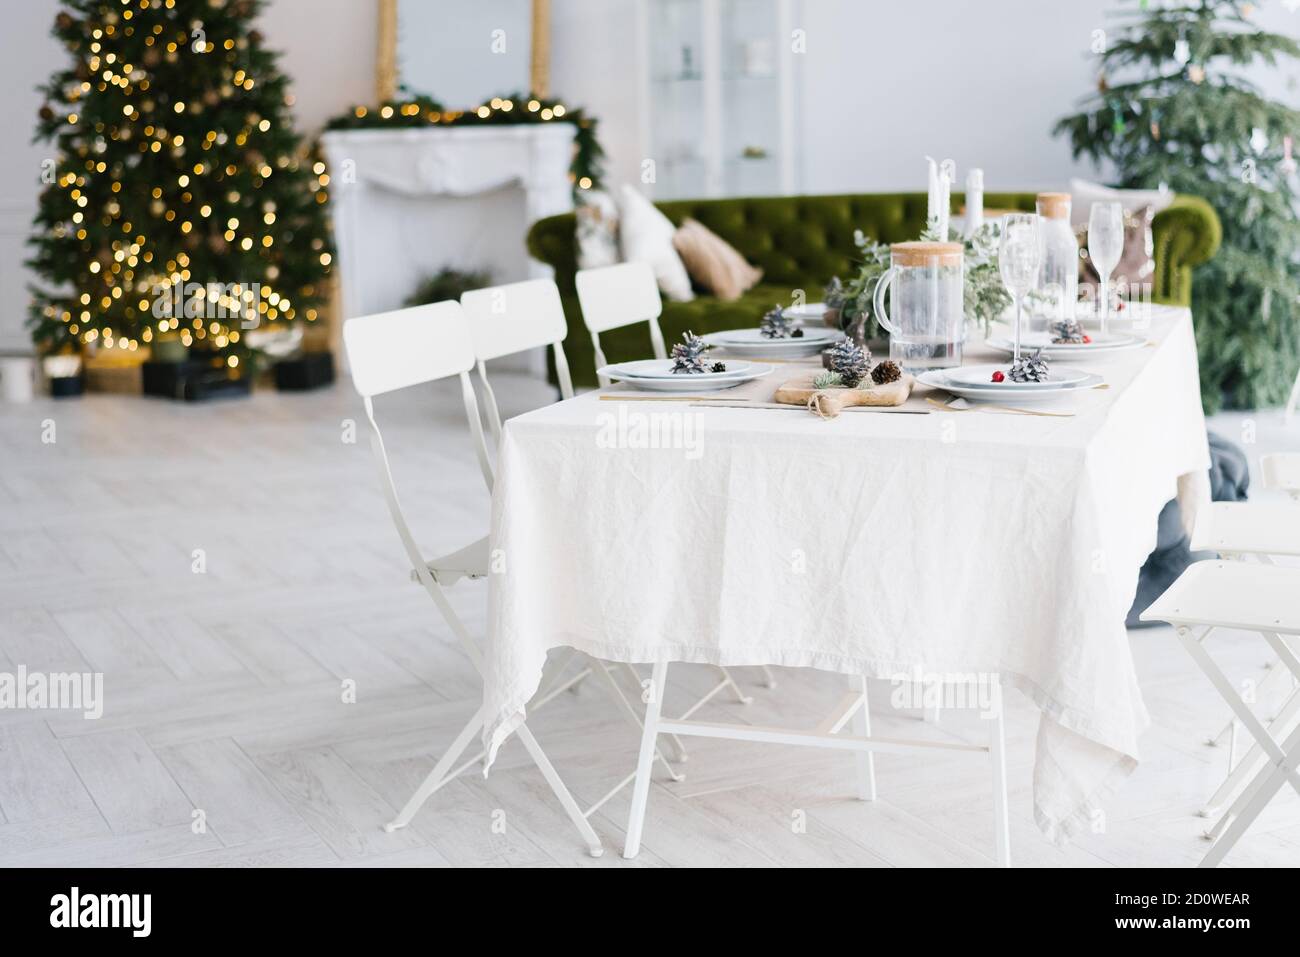 Ein gemütlicher Ort mit Weihnachtsschmuck, einem Weihnachtsbaum und einem guten Tisch für eine große Familie. Weihnachten oder Neujahr Interieur. Stockfoto